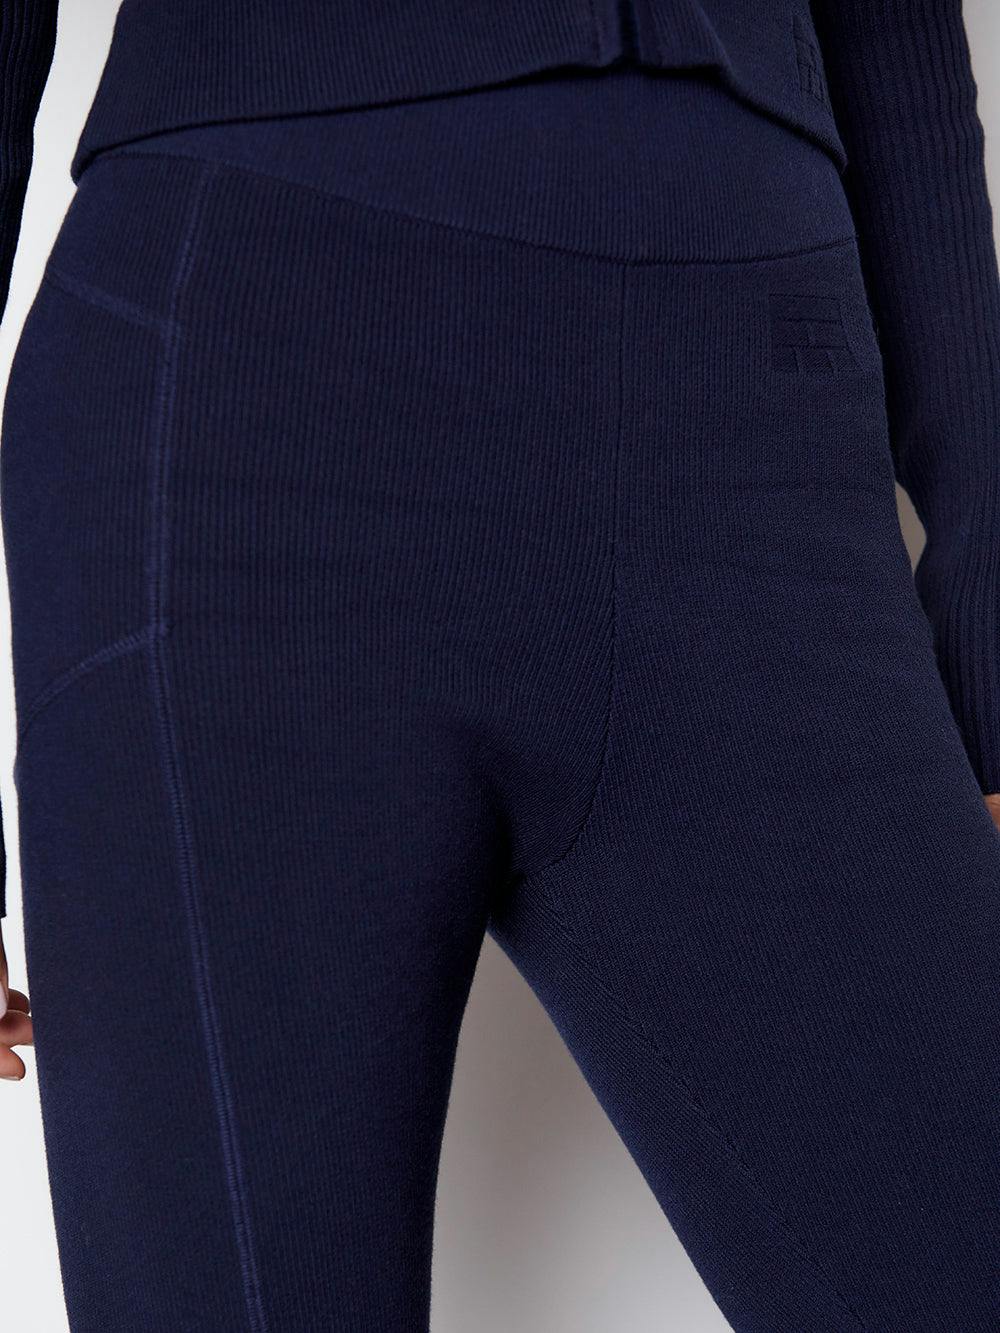 pants detail view